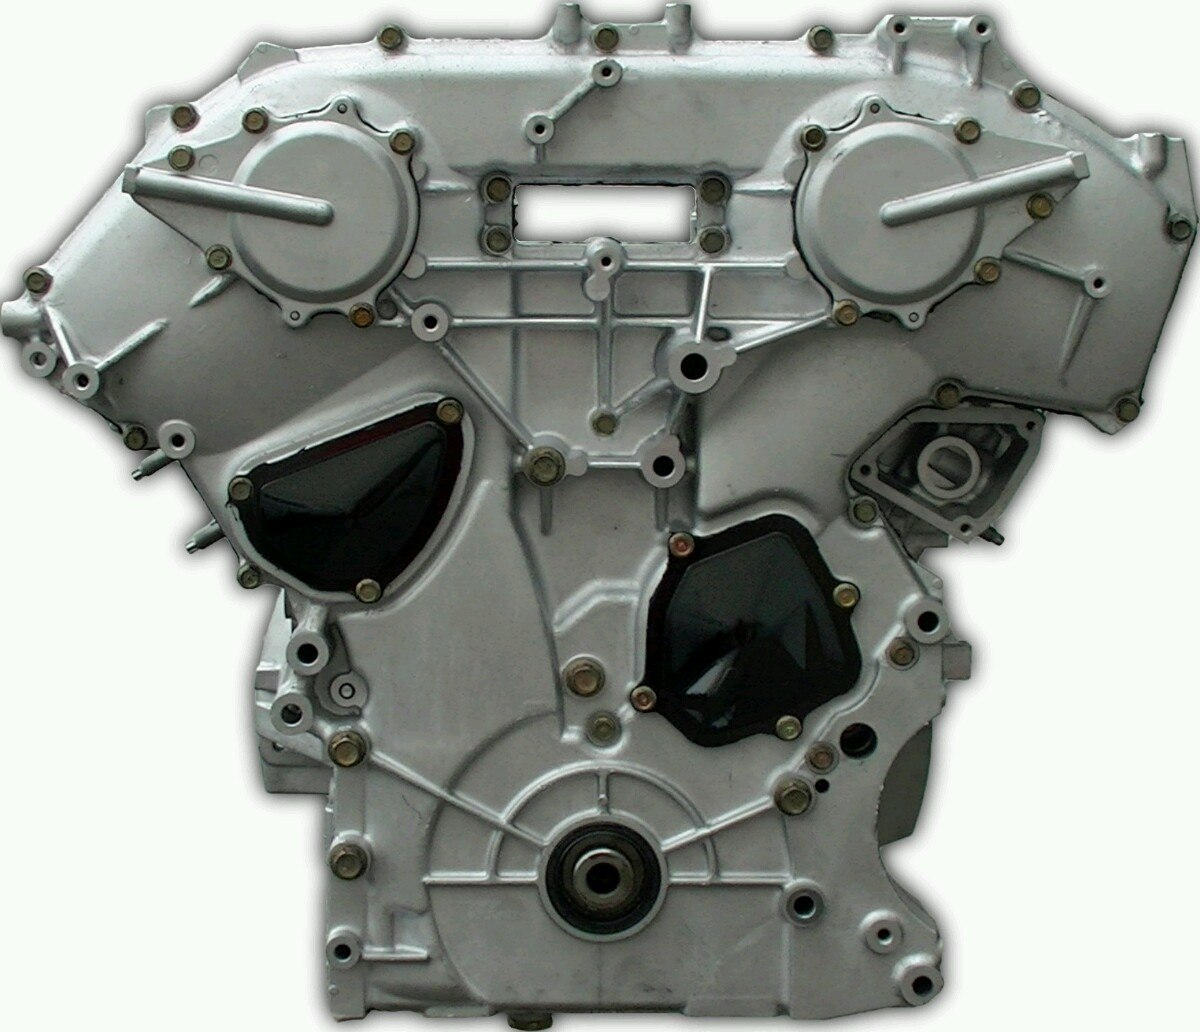 Motor Nissan Pathfinder 4.0 - $ 38,000.00 en Mercado Libre 2010 Nissan Pathfinder Engine 4.0 L V6